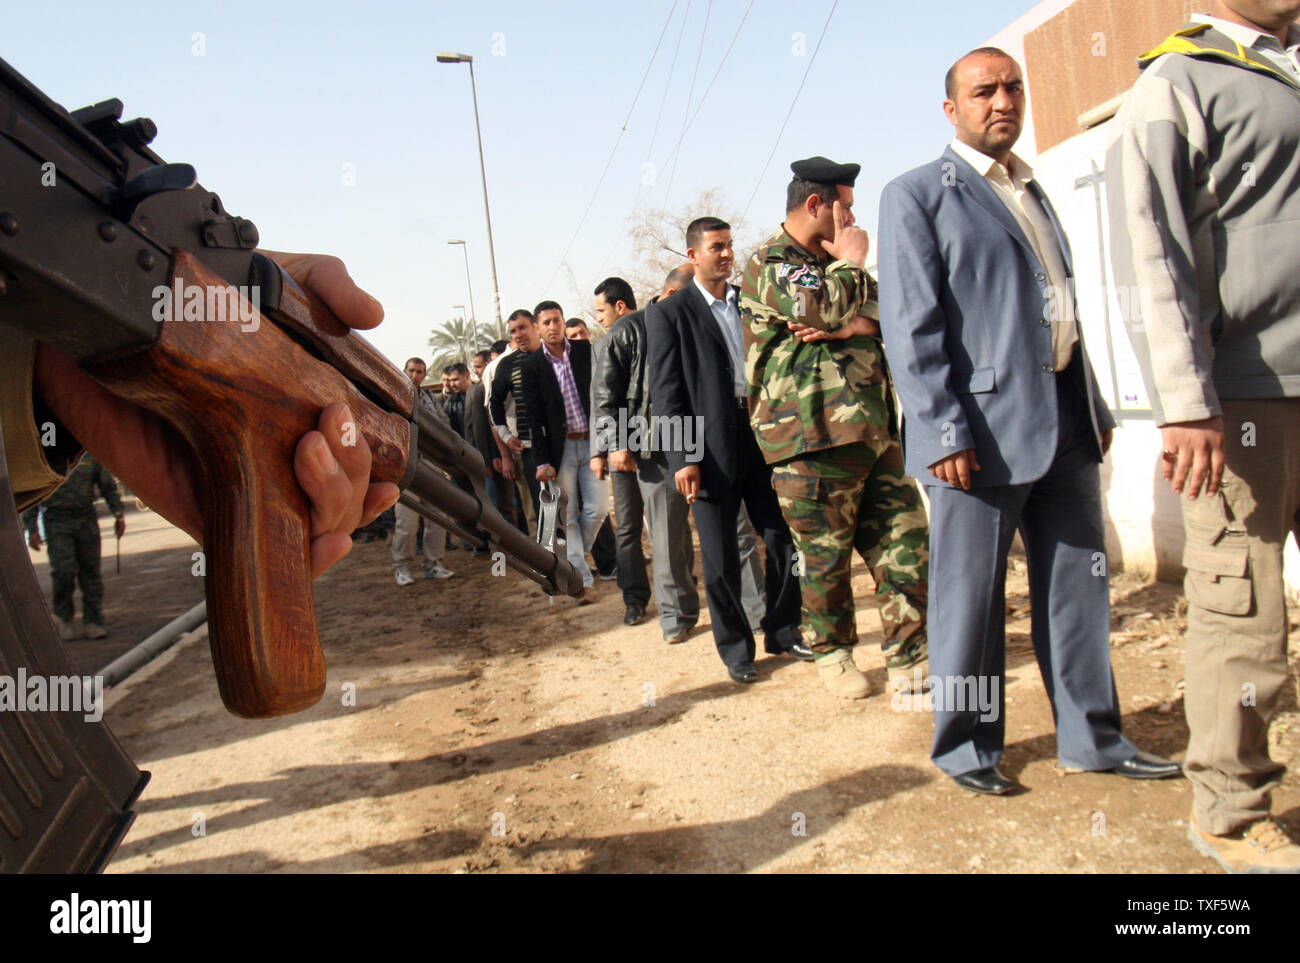 La sécurité de l'Iraq est en vigueur en tant que policiers iraquiens show sont fouillé avant d'entrer dans un bureau de vote à Bagdad le 4 mars 2010. Plus de 800 000 Iraquiens, y compris le personnel de sécurité, les médecins, les prisonniers et les travailleurs de l'hôpital vote aujourd'hui avant l'élection nationale Dimanche, 7 mars. Photos d'UPI/Ali Jasim Banque D'Images